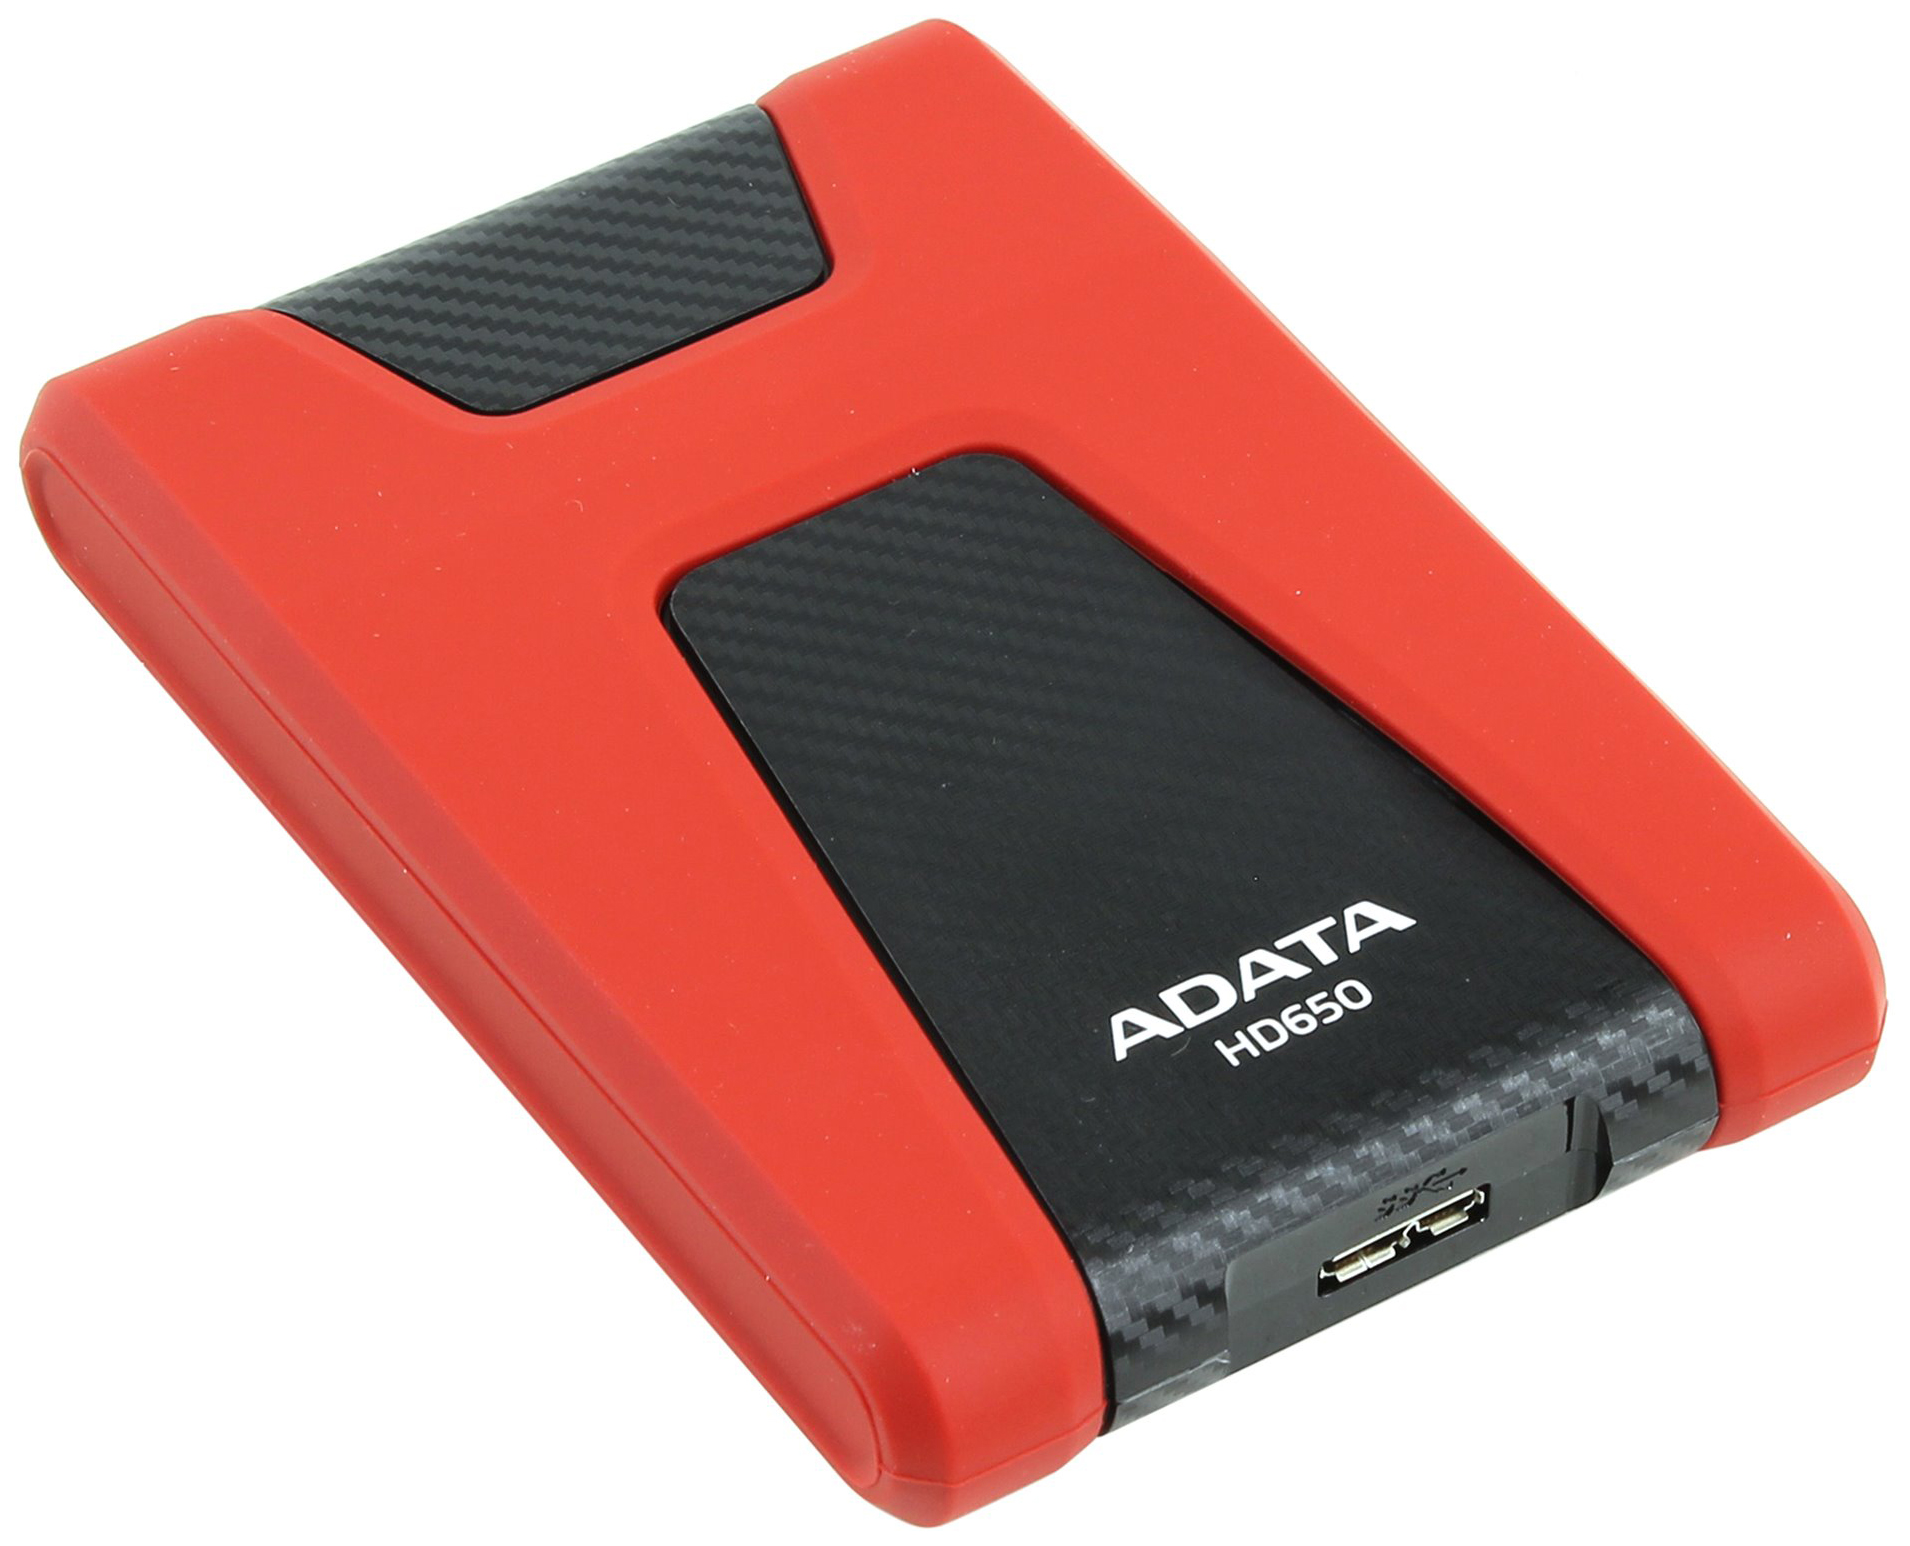 Внешний жесткий диск ADATA DashDrive Durable HD650 1ТБ (AHD650-1TU3-CRD), купить в Москве, цены в интернет-магазинах на Мегамаркет